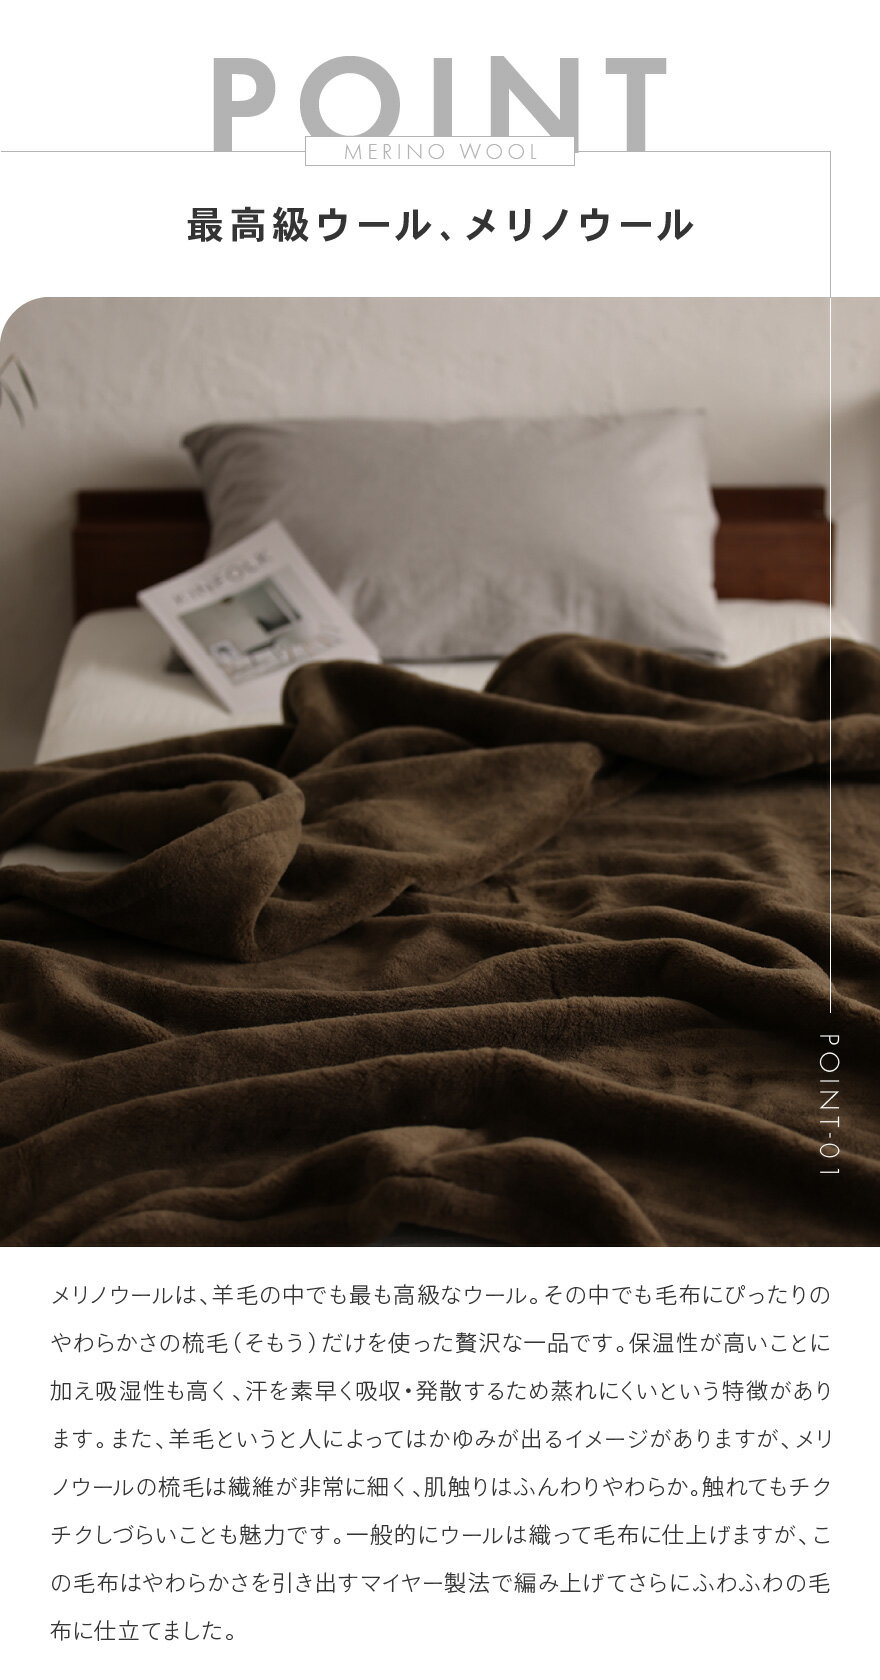 日本製 ウール毛布 メリノウール ベーシック シングルサイズ 140×200cm グレー ふんわり 防臭 保温 通気性 暖かい 発熱 秋冬向け(FQ038-SJ)